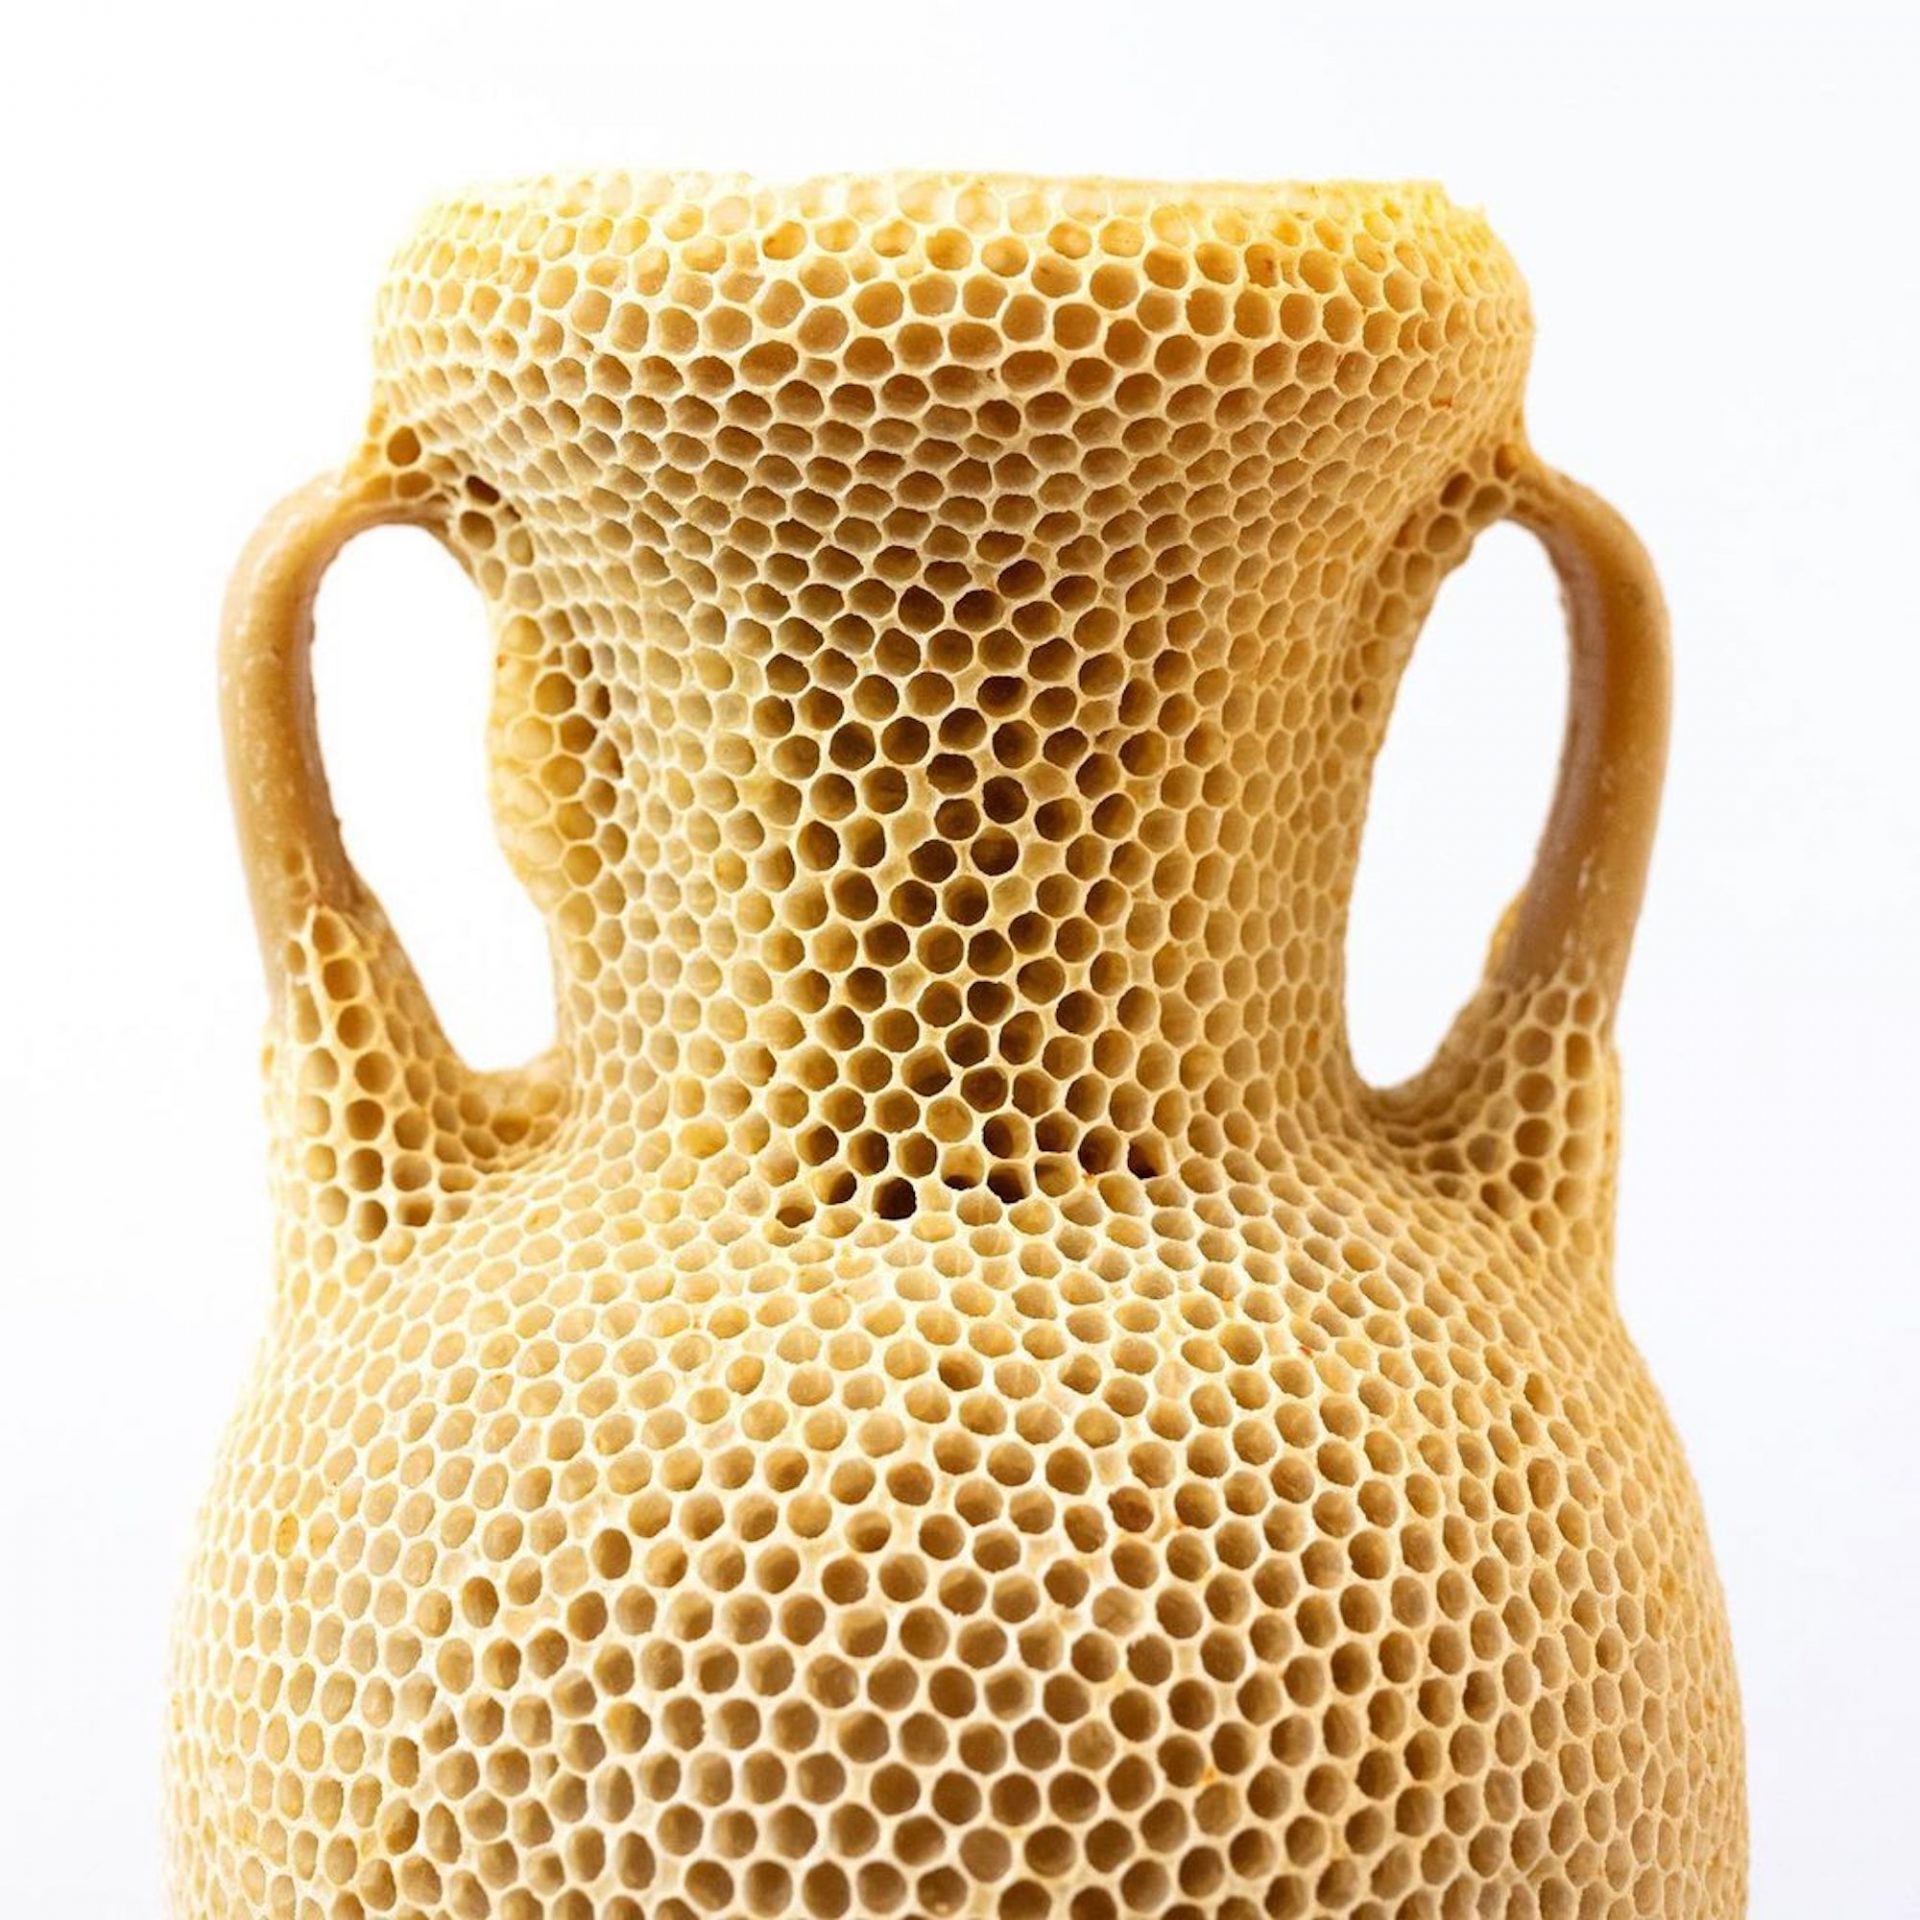 Une amphore sculptée en cire d'abeille par Tomáš Libertíny